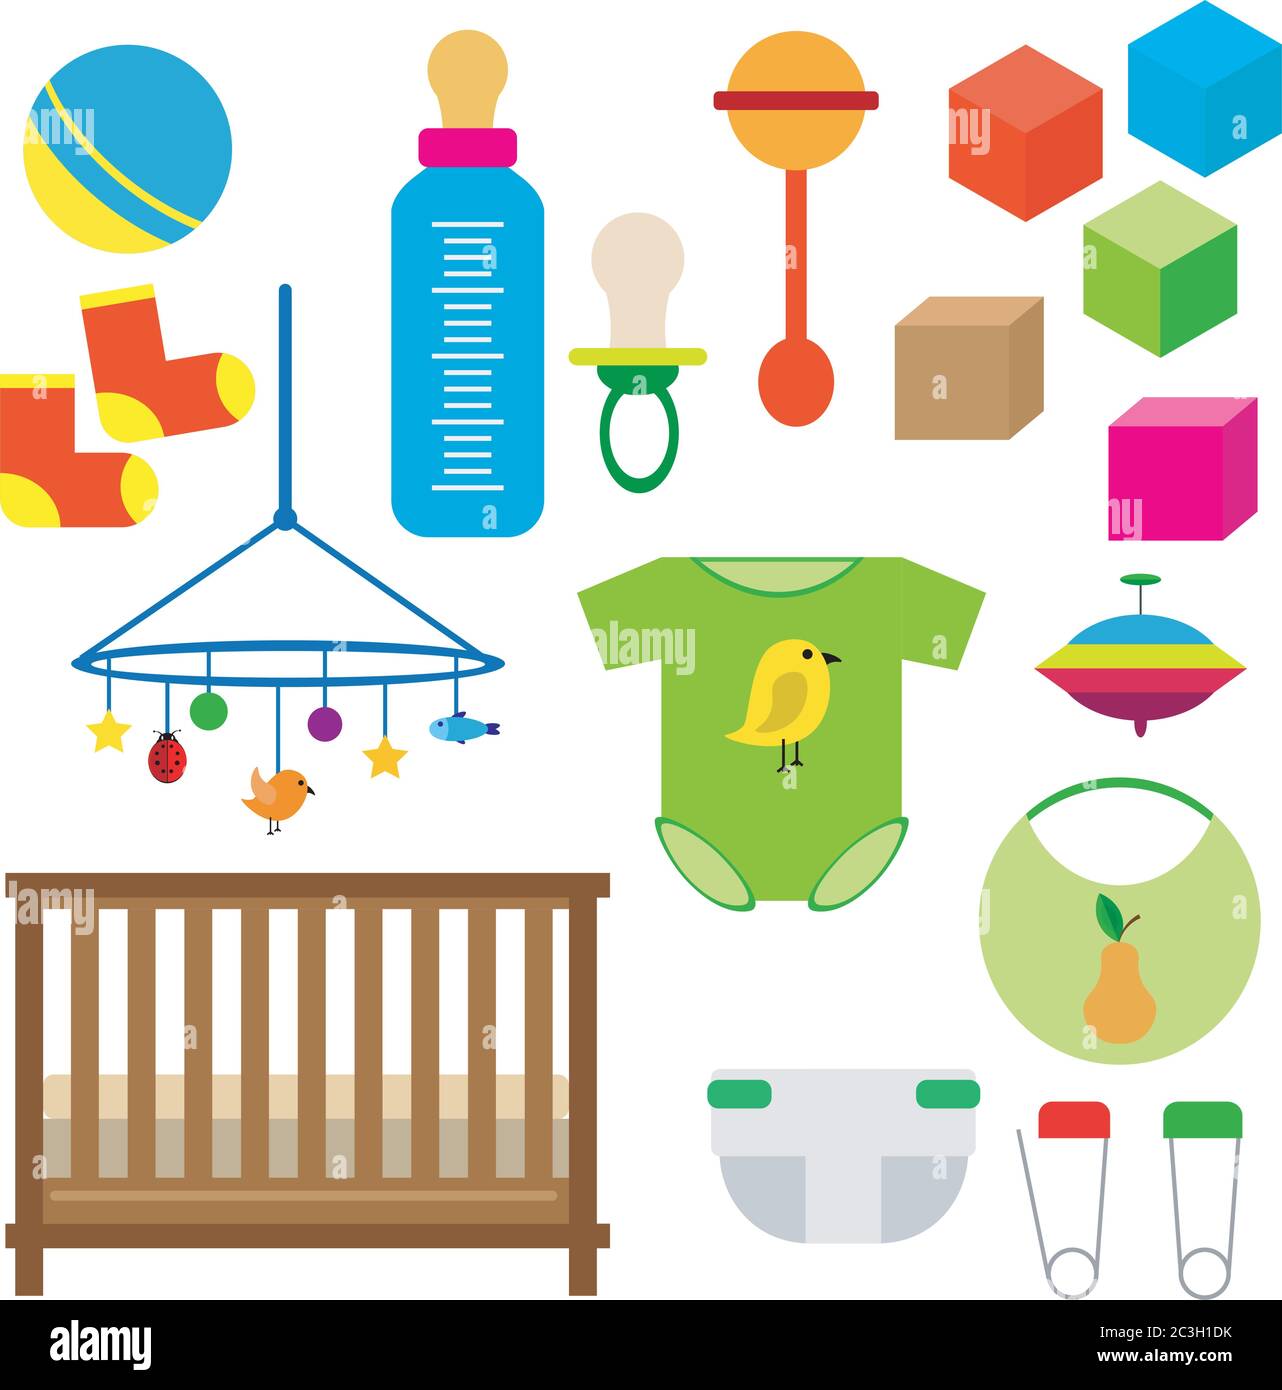 Kinder-Set: Spielzeug, Kleidung, Windeln, Krippe mit Zaun, Würfel. Vektor auf weißem isoliertem Hintergrund gesetzt. Stock Vektor